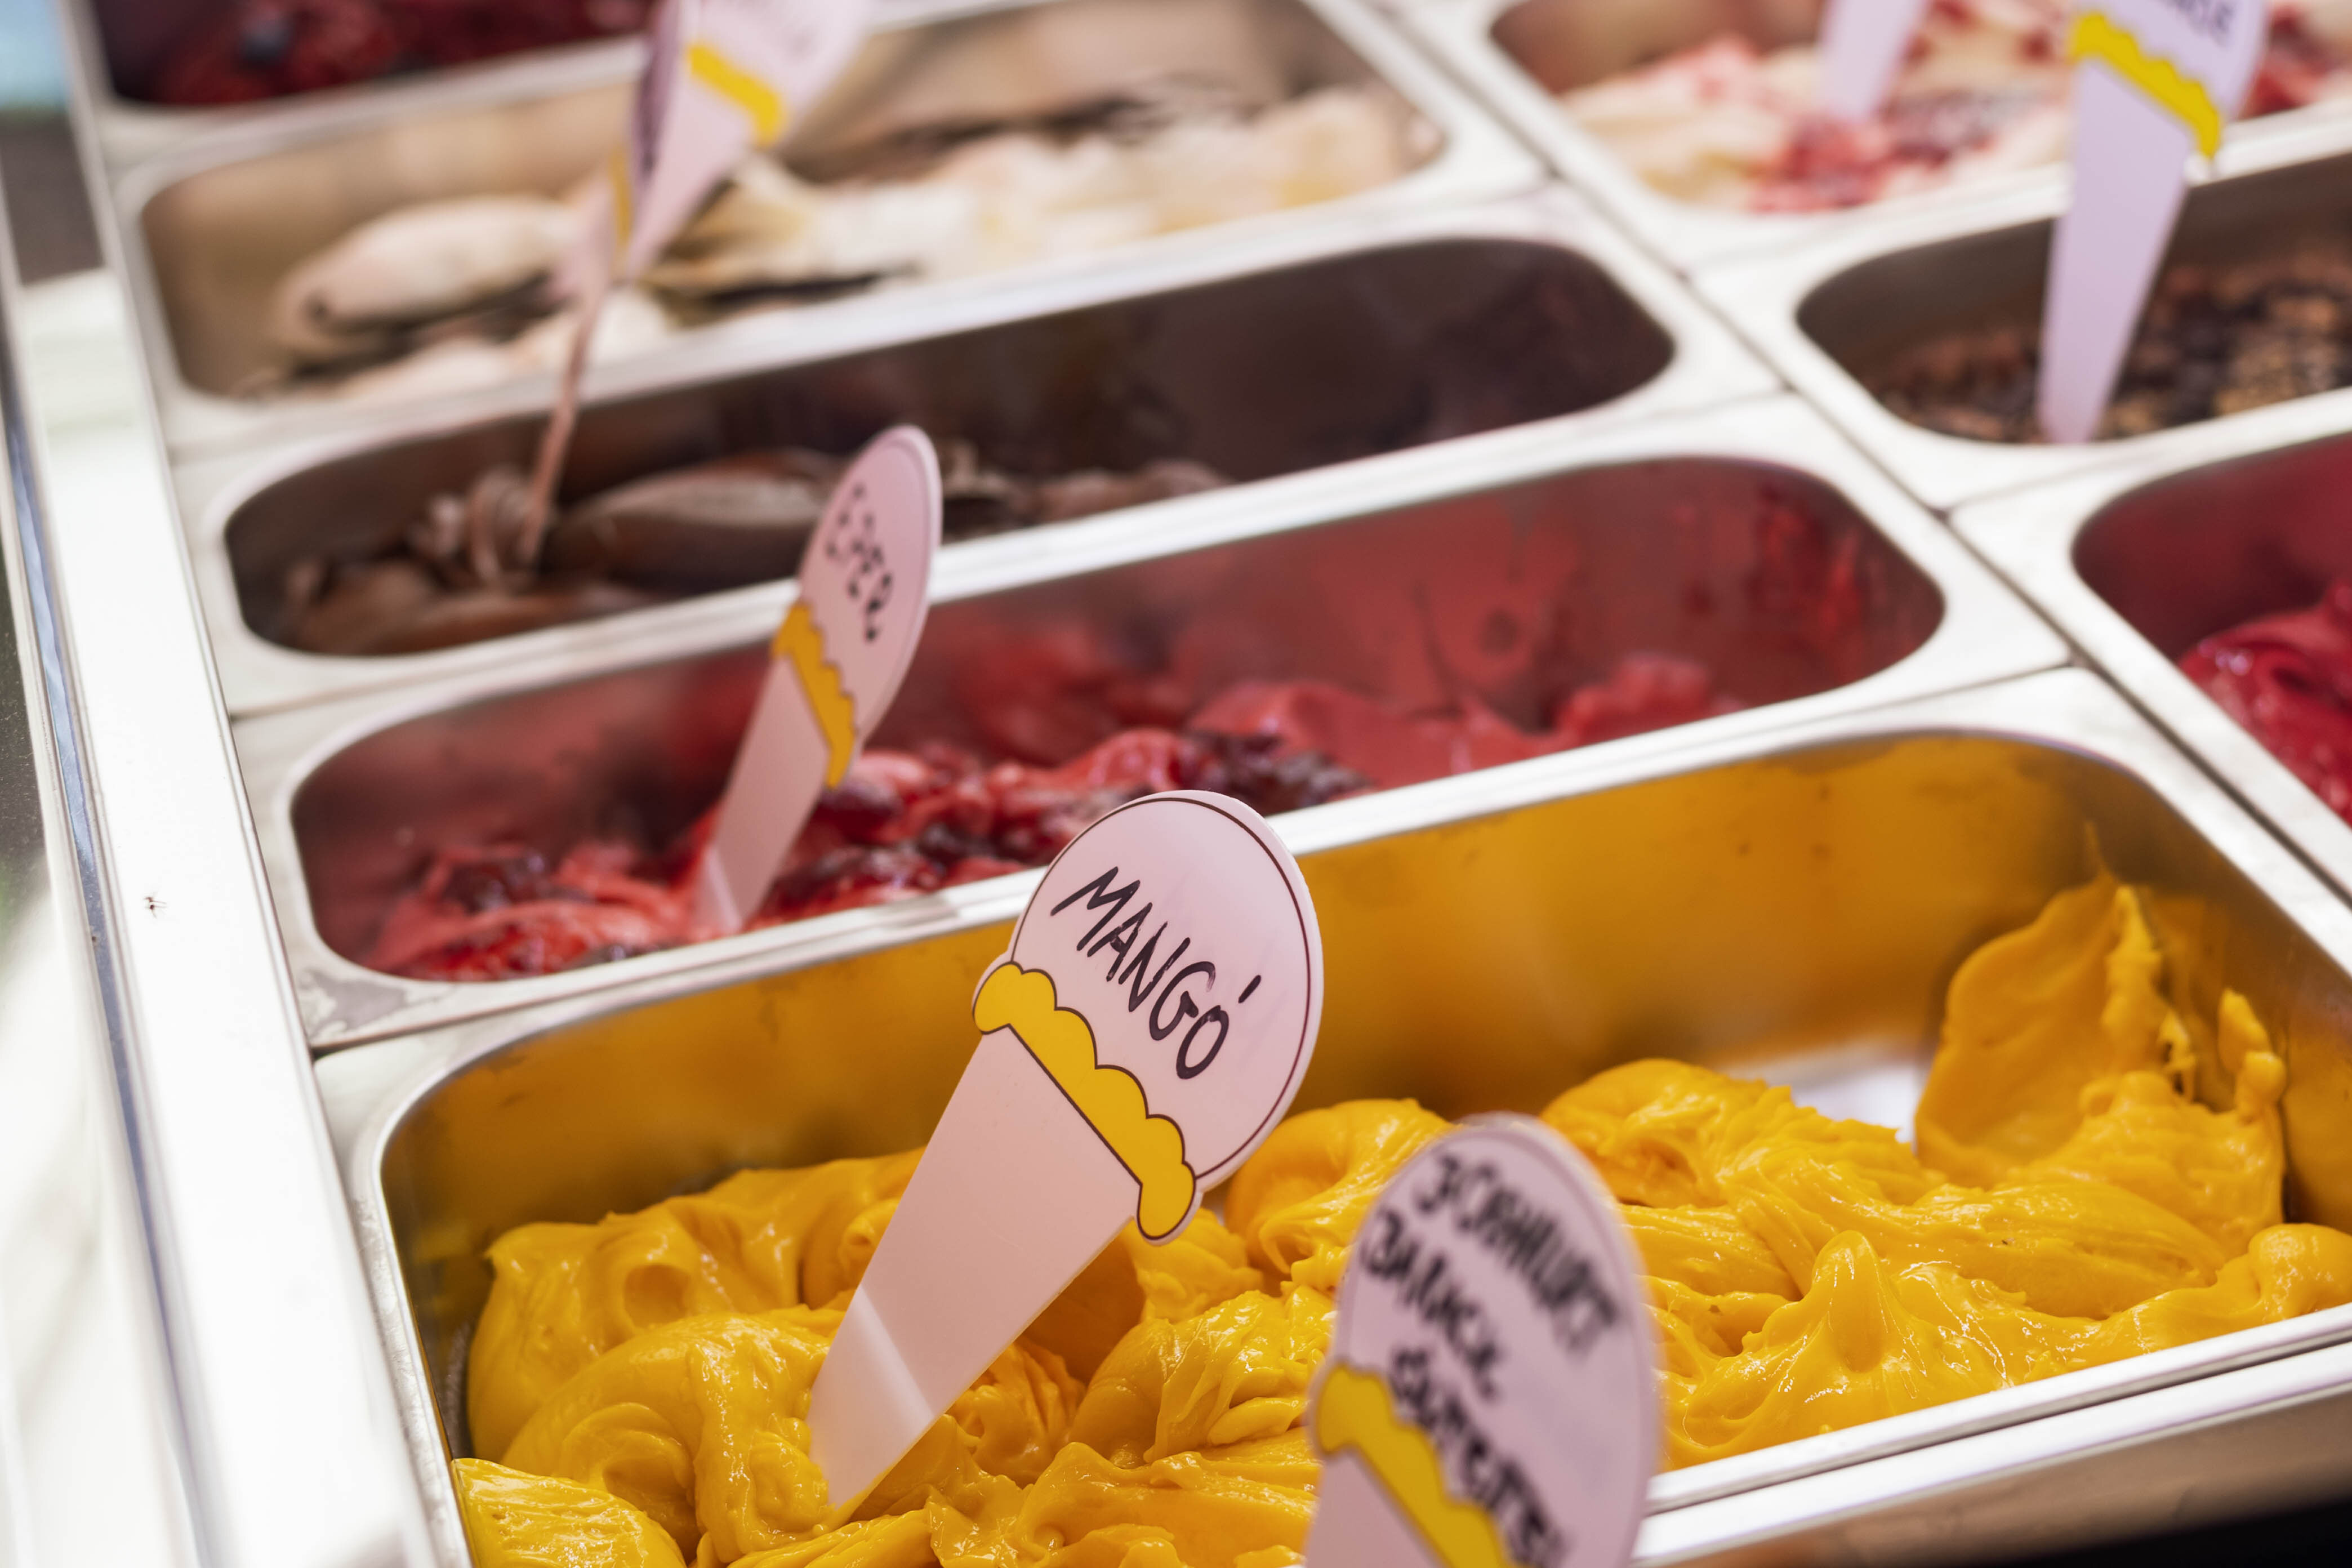 Sarokház in Balatonfüred offers unique ice creams